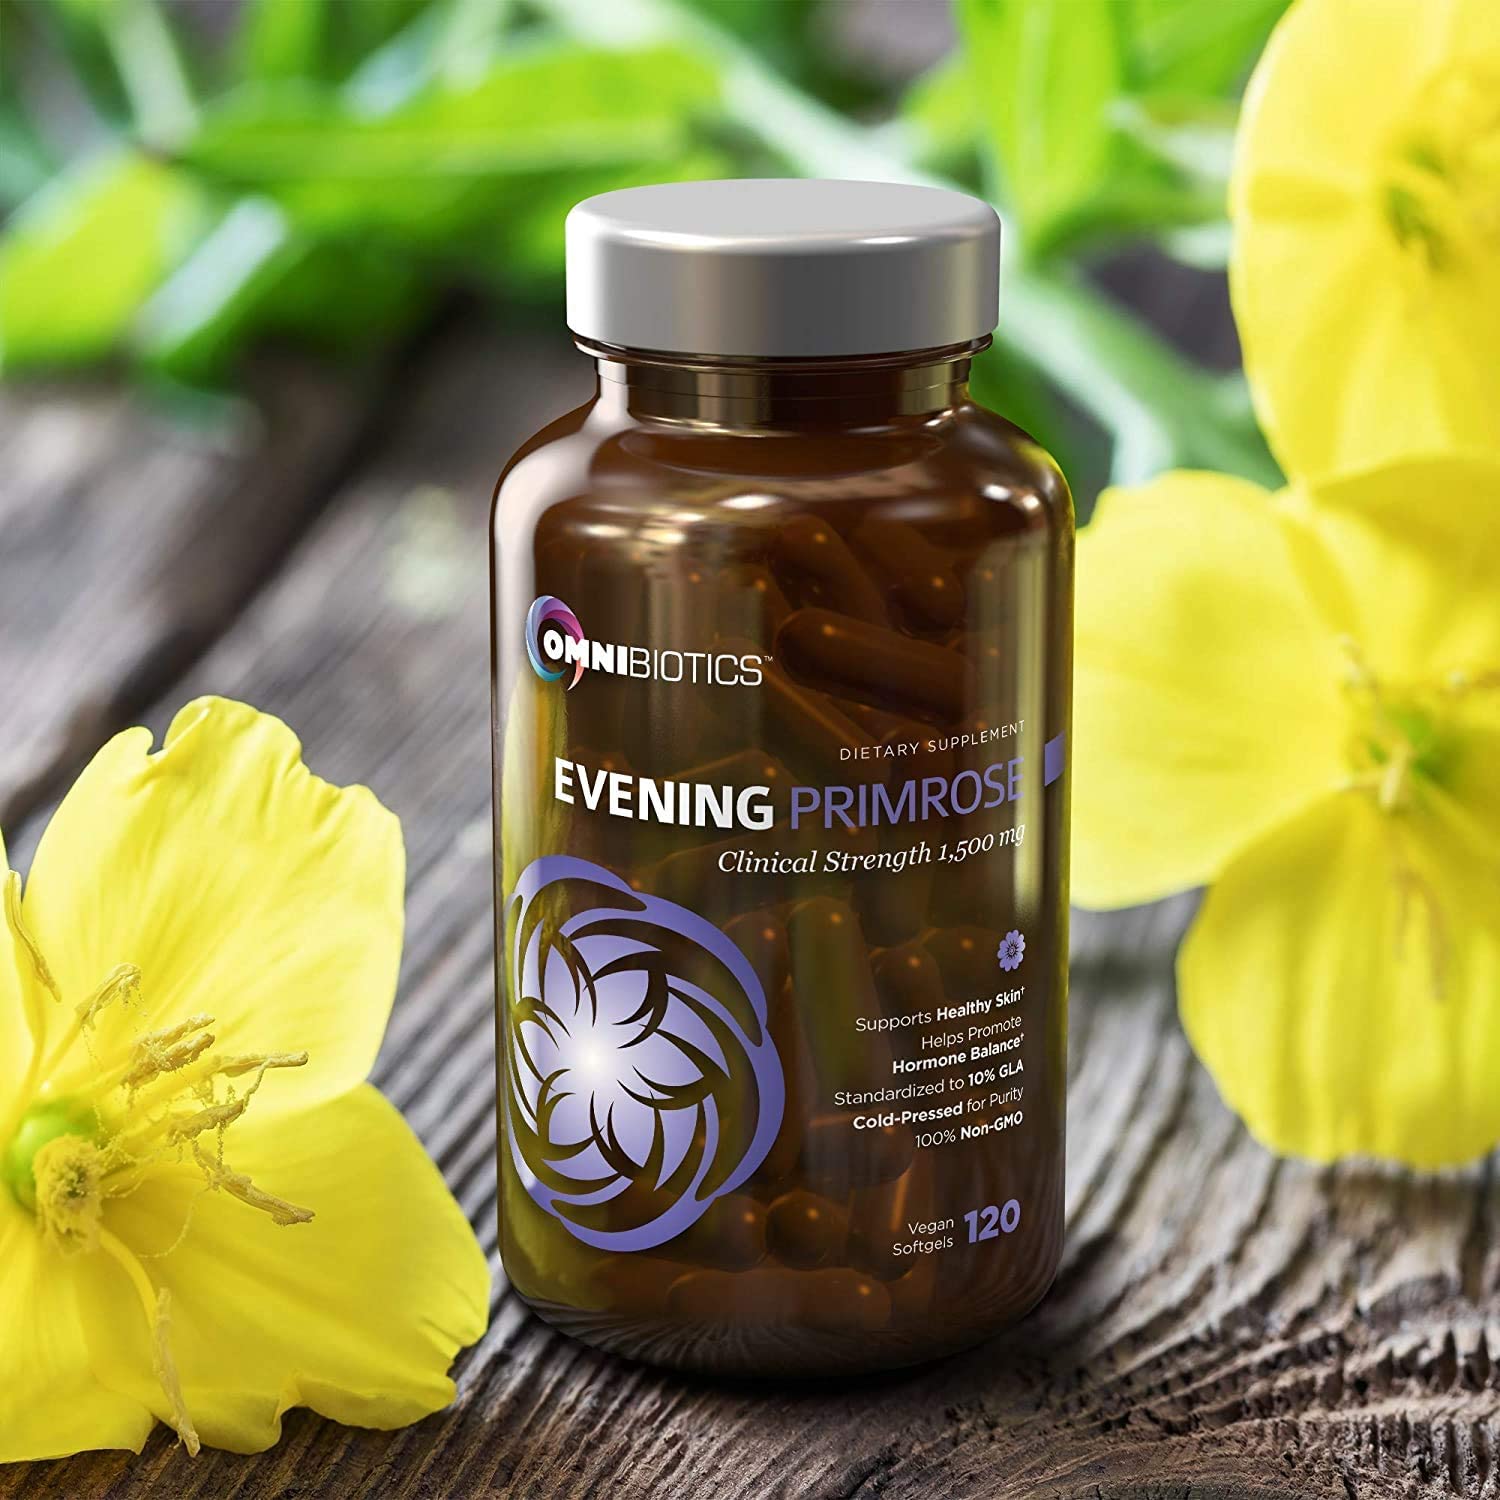 Organic Evening Primrose Oil